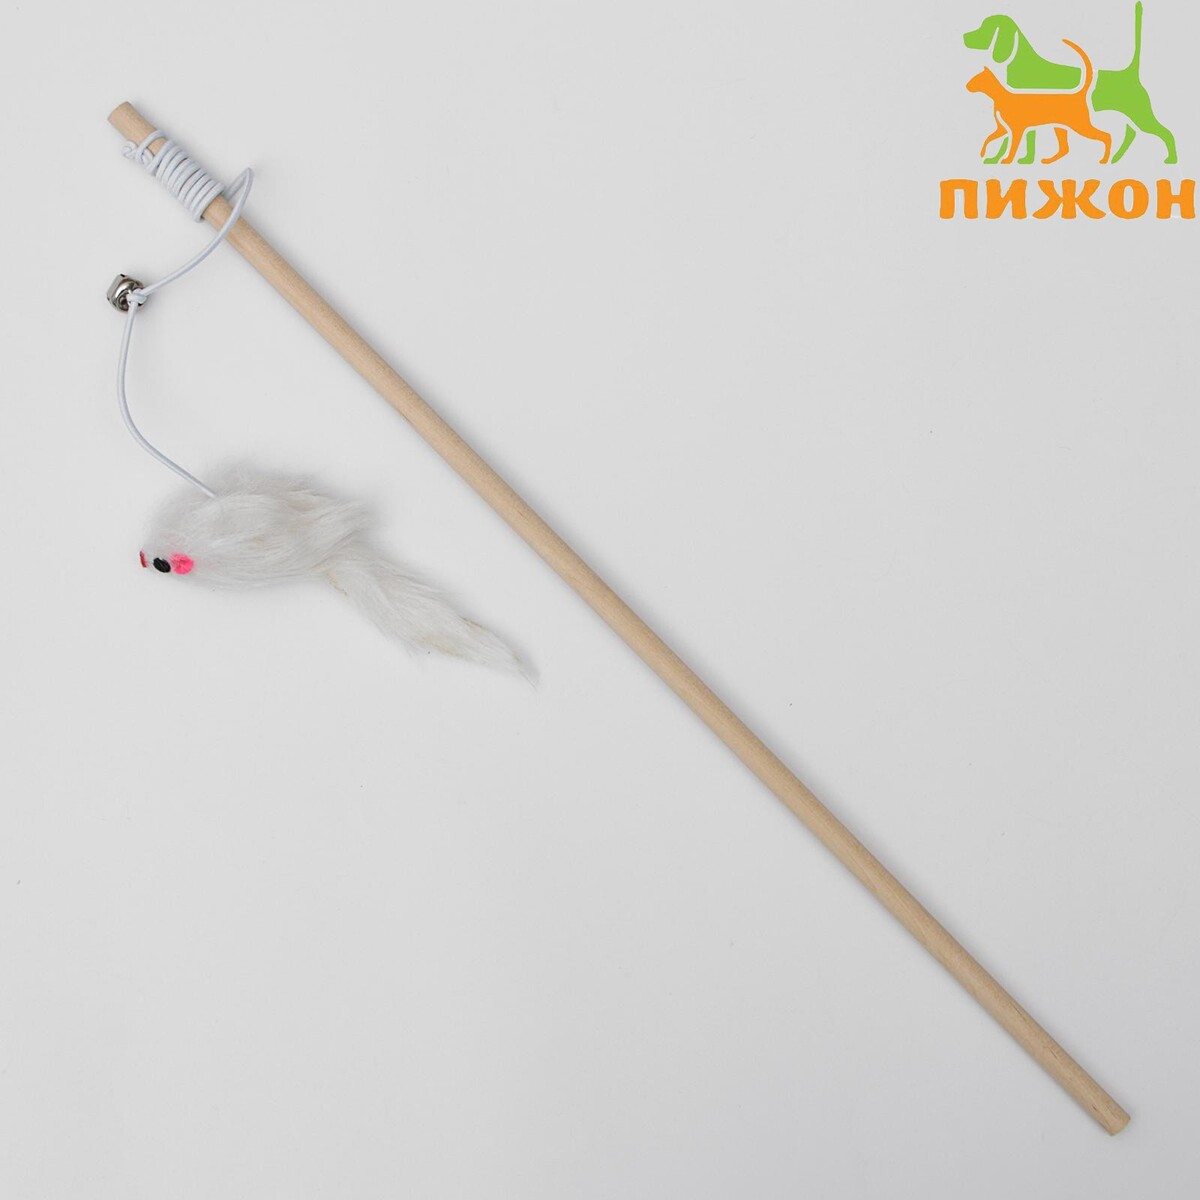 Дразнилка мышь на деревянной палочке, 36 см